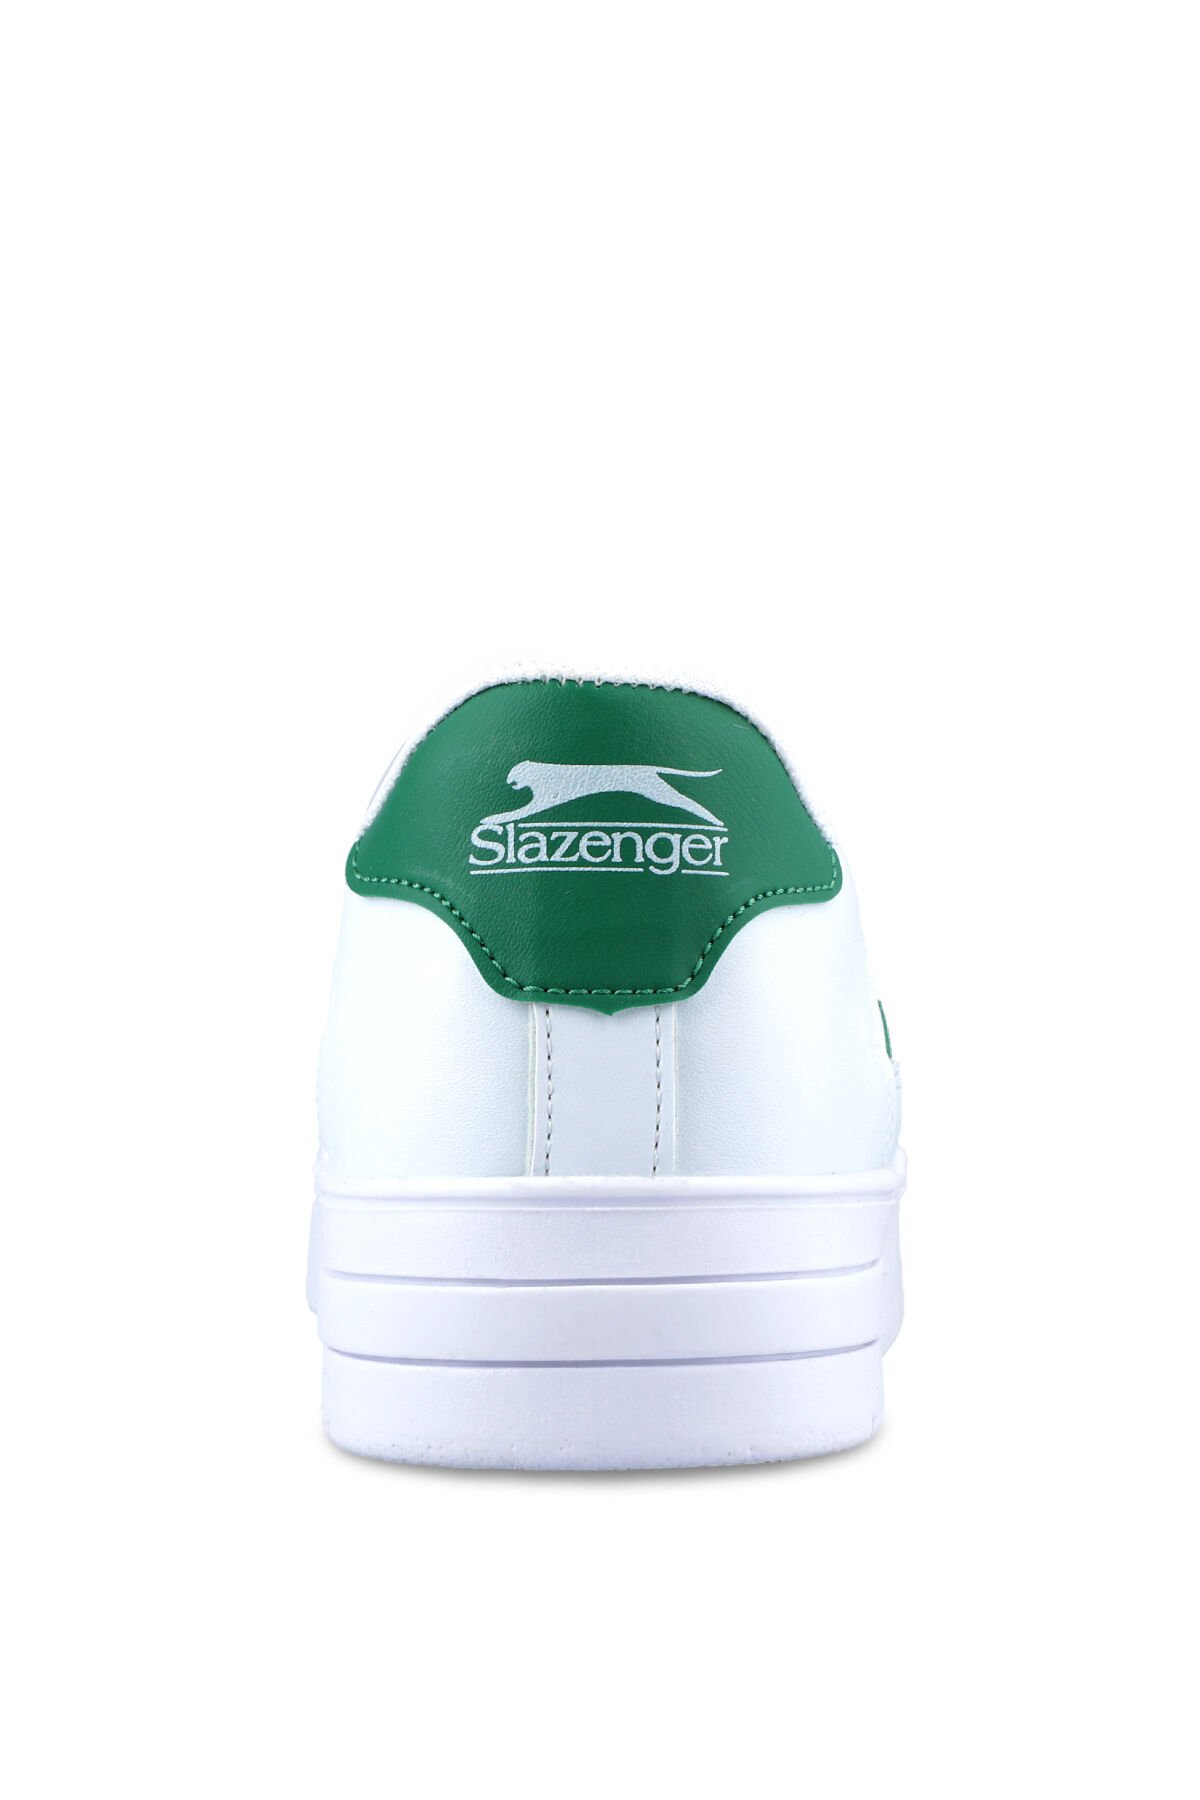 Slazenger CAMP IN Sneaker Kadın Ayakkabı Beyaz / Yeşil - Thumbnail